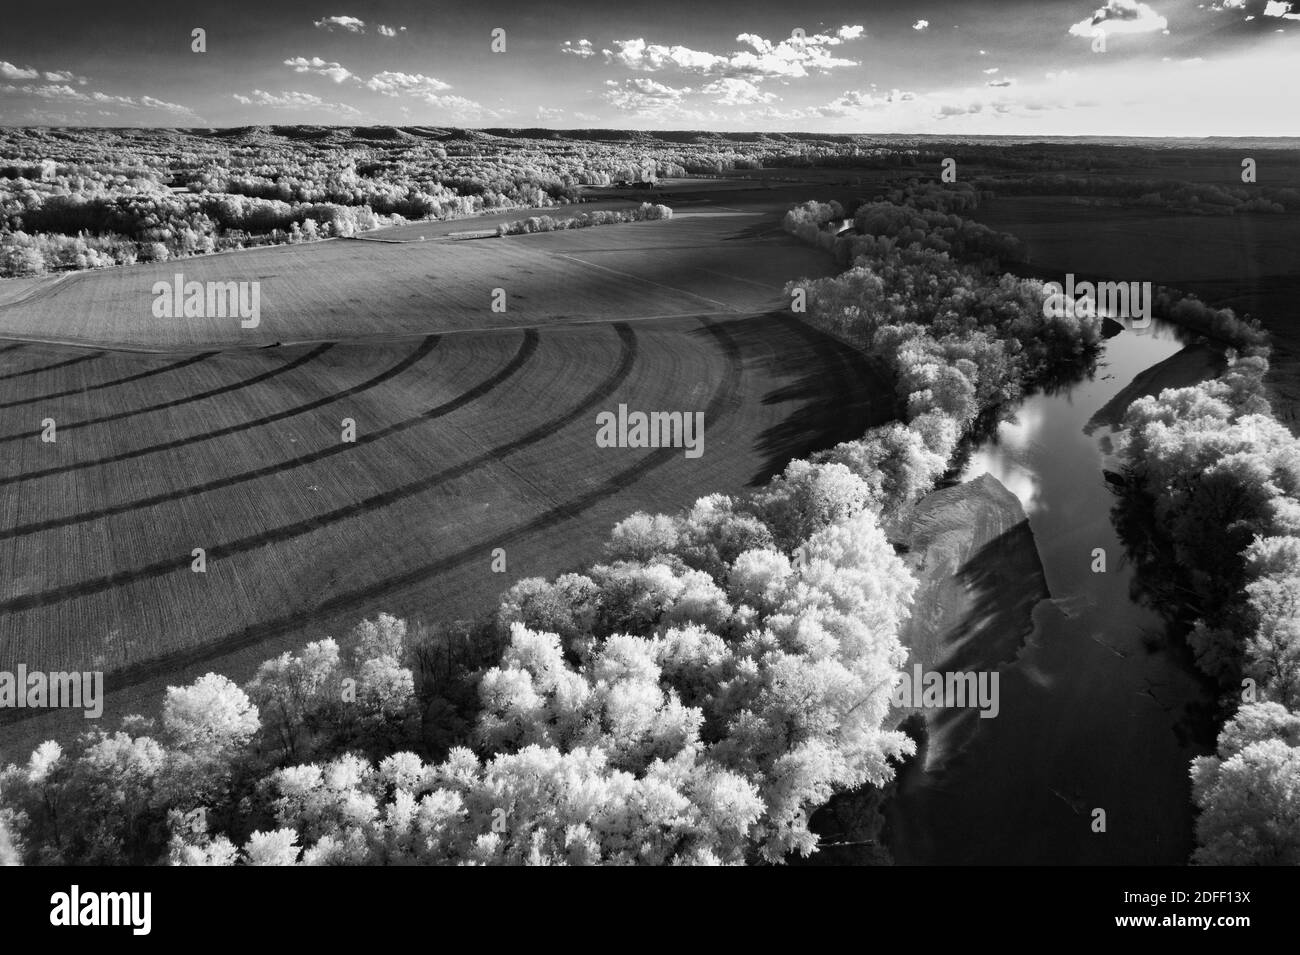 Une photo infrarouge aérienne noir et blanc d'un champ avec une rivière bordée d'arbres. Certains demi-cercles sont formés par les pneus d'un irrigateur de terrain. Banque D'Images